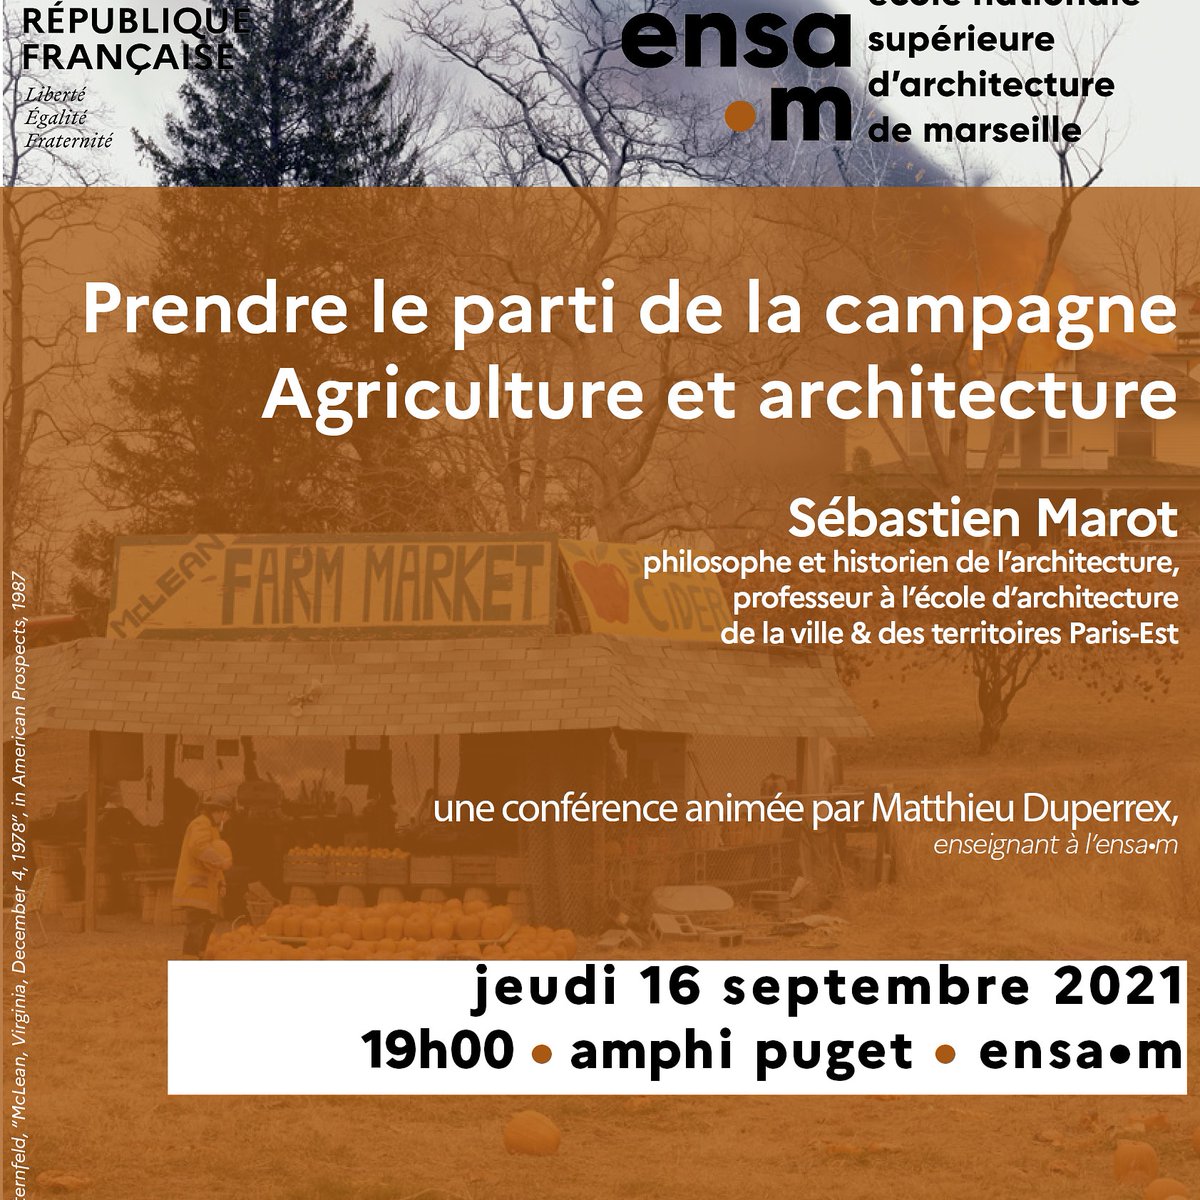 Ce soir conférence de Sébastien Marot #architecture#conférence